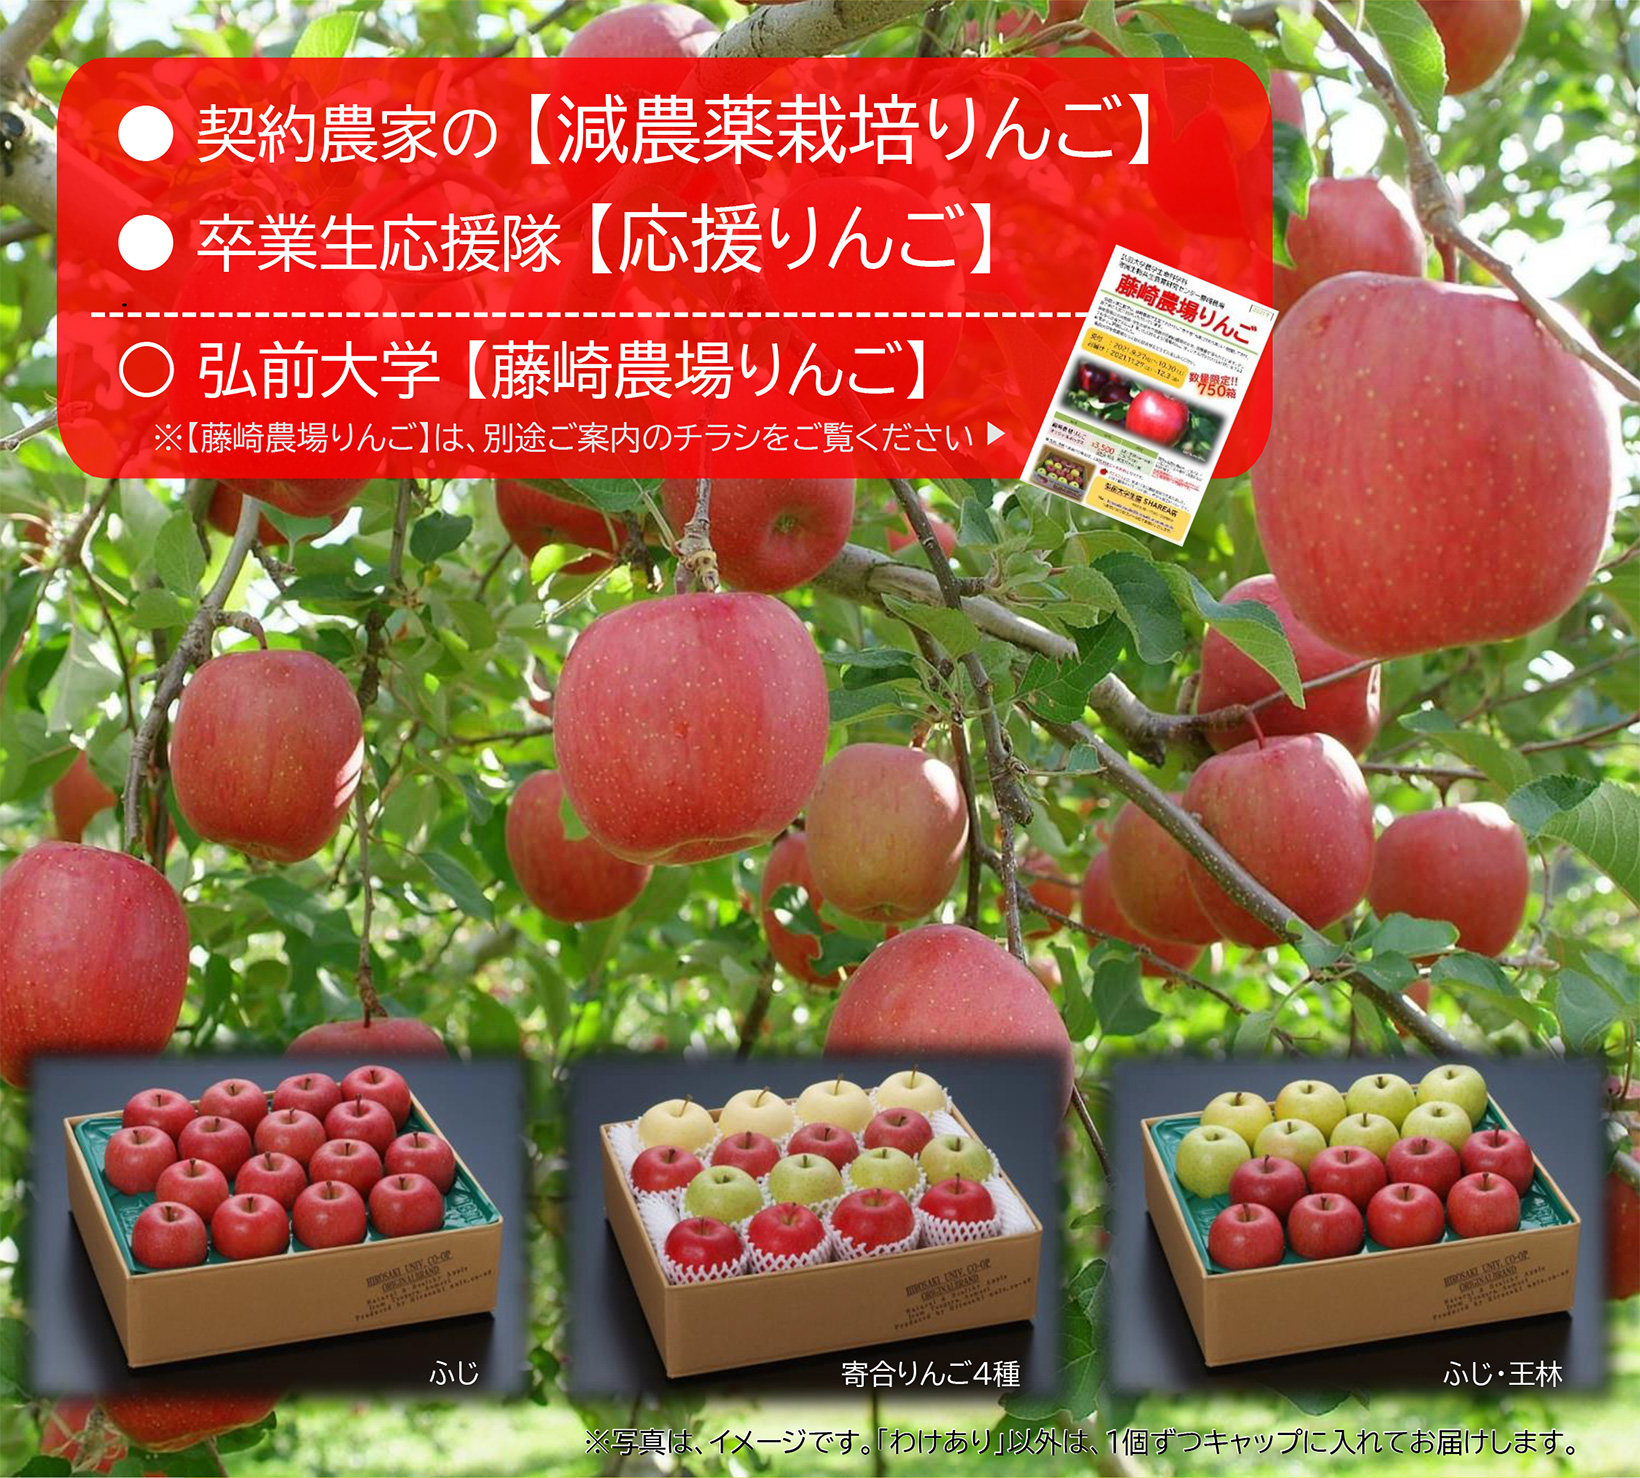 契約農家の減農薬栽培りんご、卒業生応援隊の応援りんご、藤崎農場りんごを取り扱っています